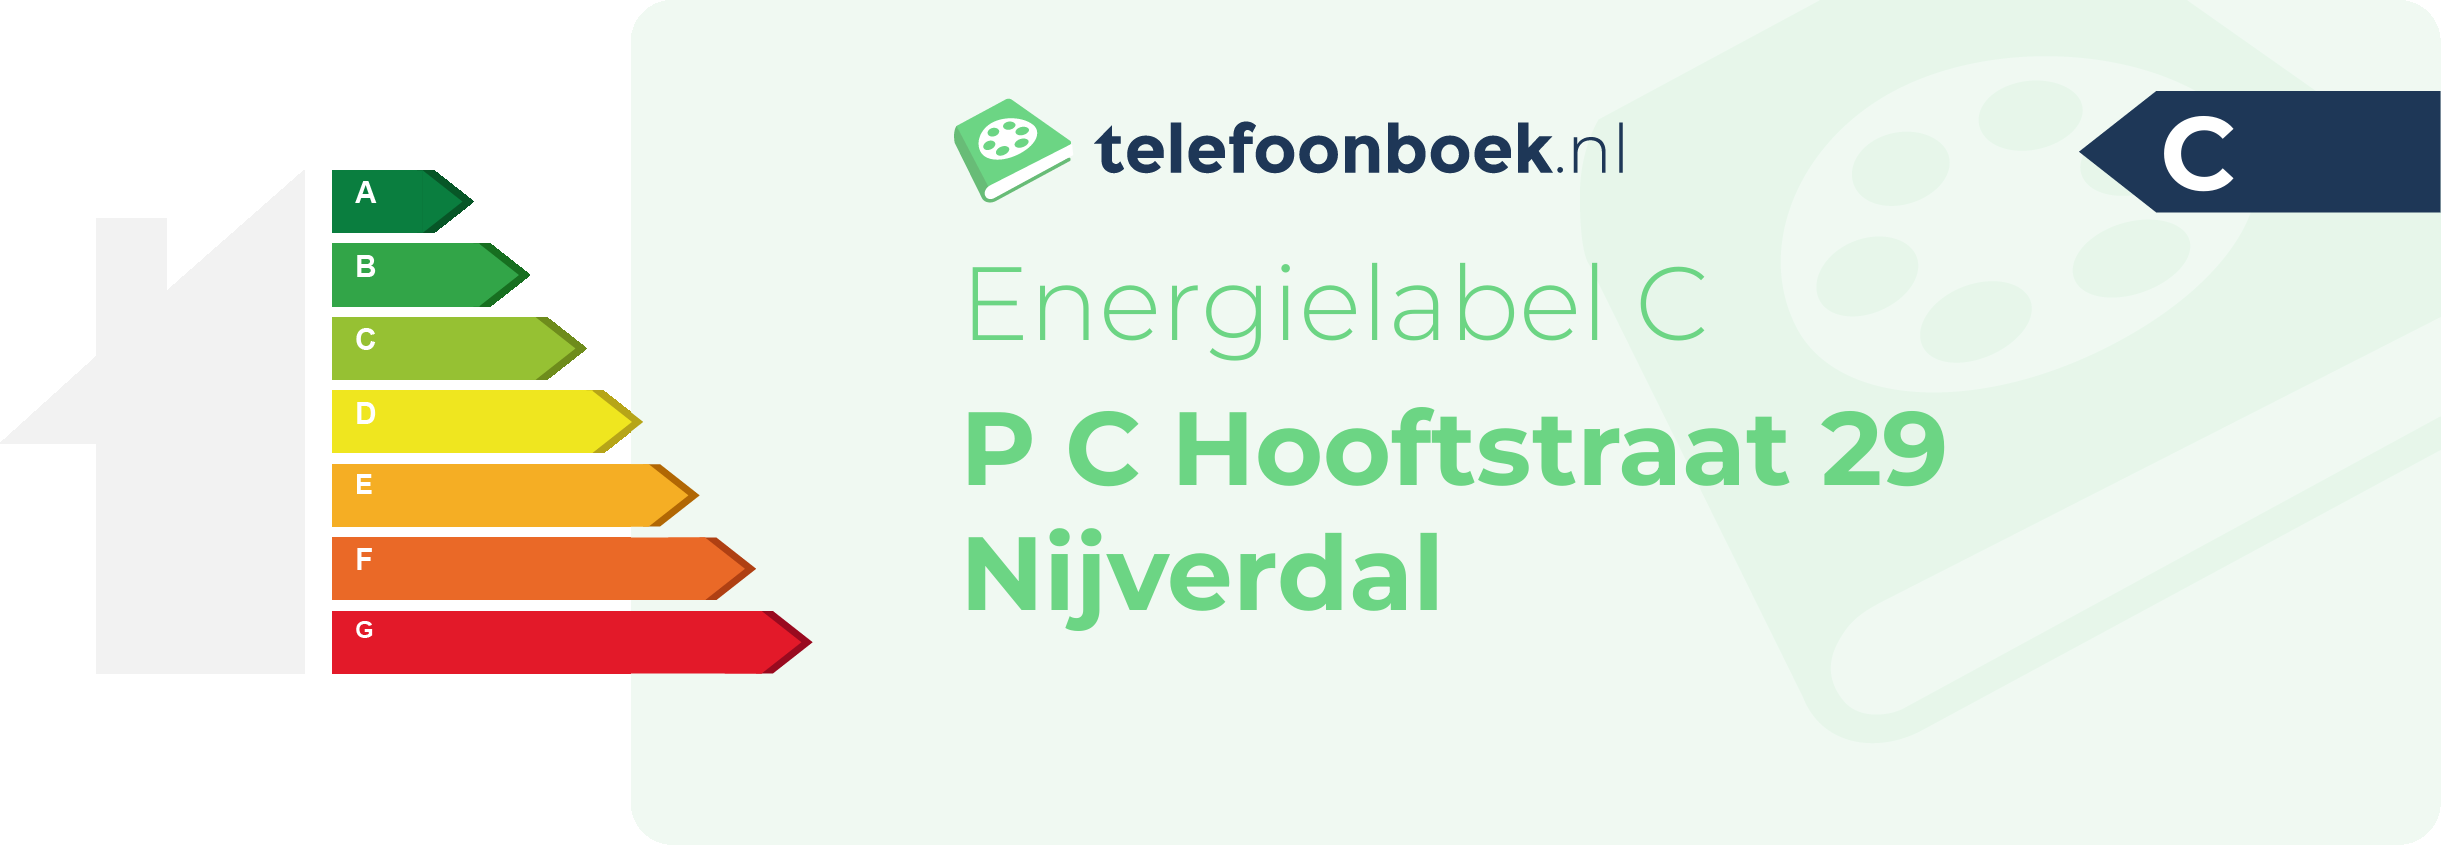 Energielabel P C Hooftstraat 29 Nijverdal